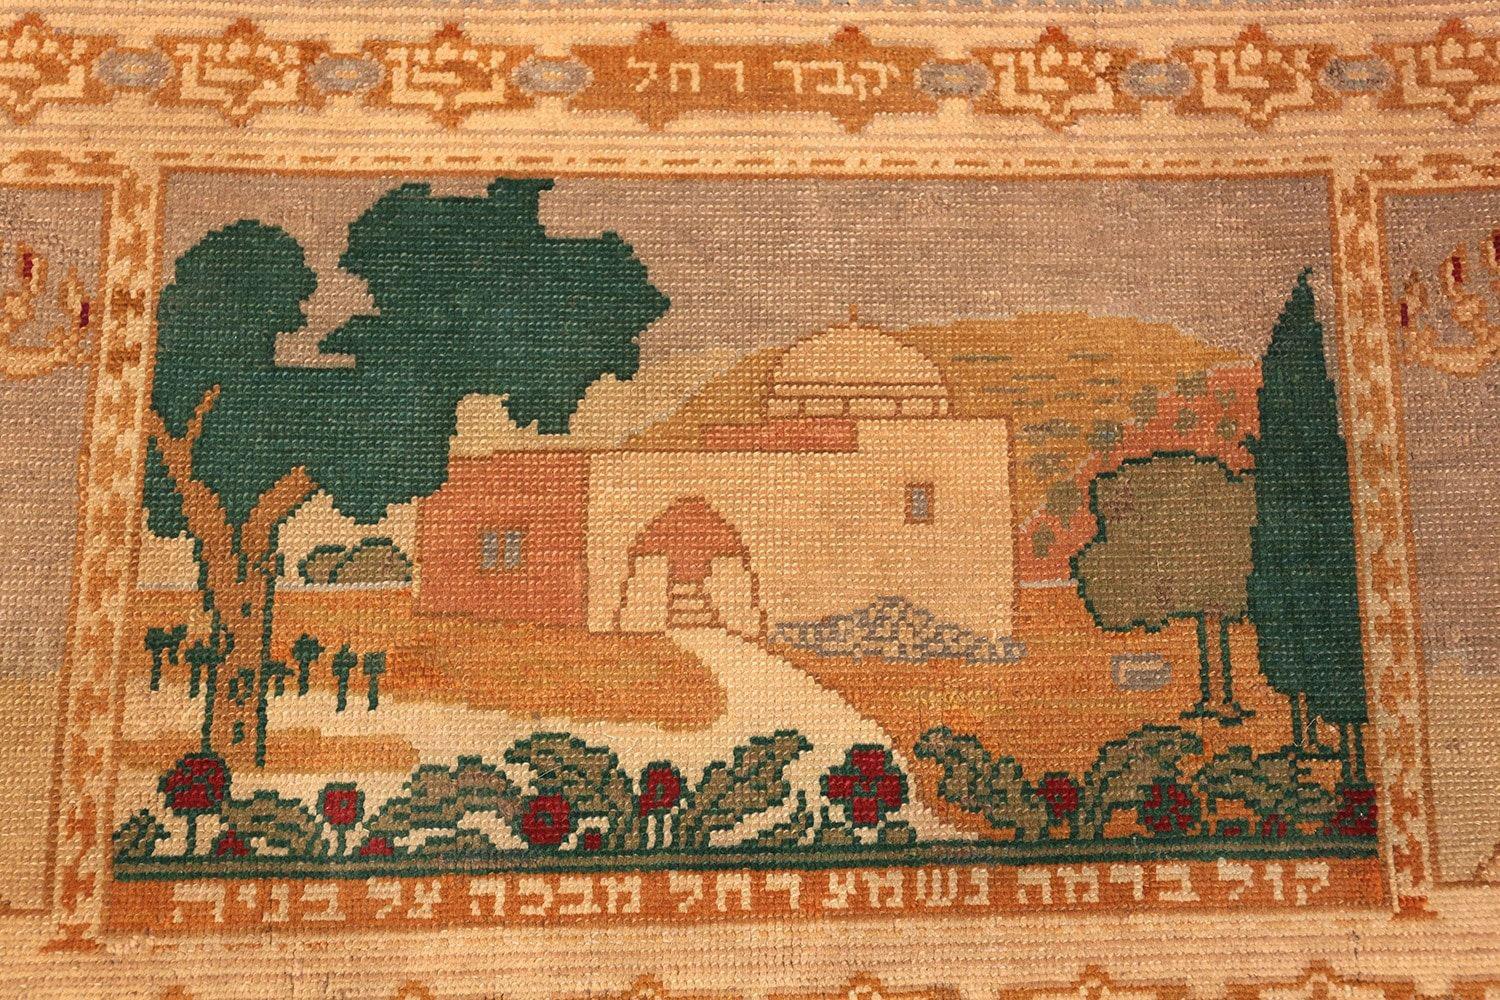 Art Nouveau Antique Israeli Pictorial Bezalel Rachel’s Tomb Rug. Size: 3 ft 9 in x 2 ft 5 in